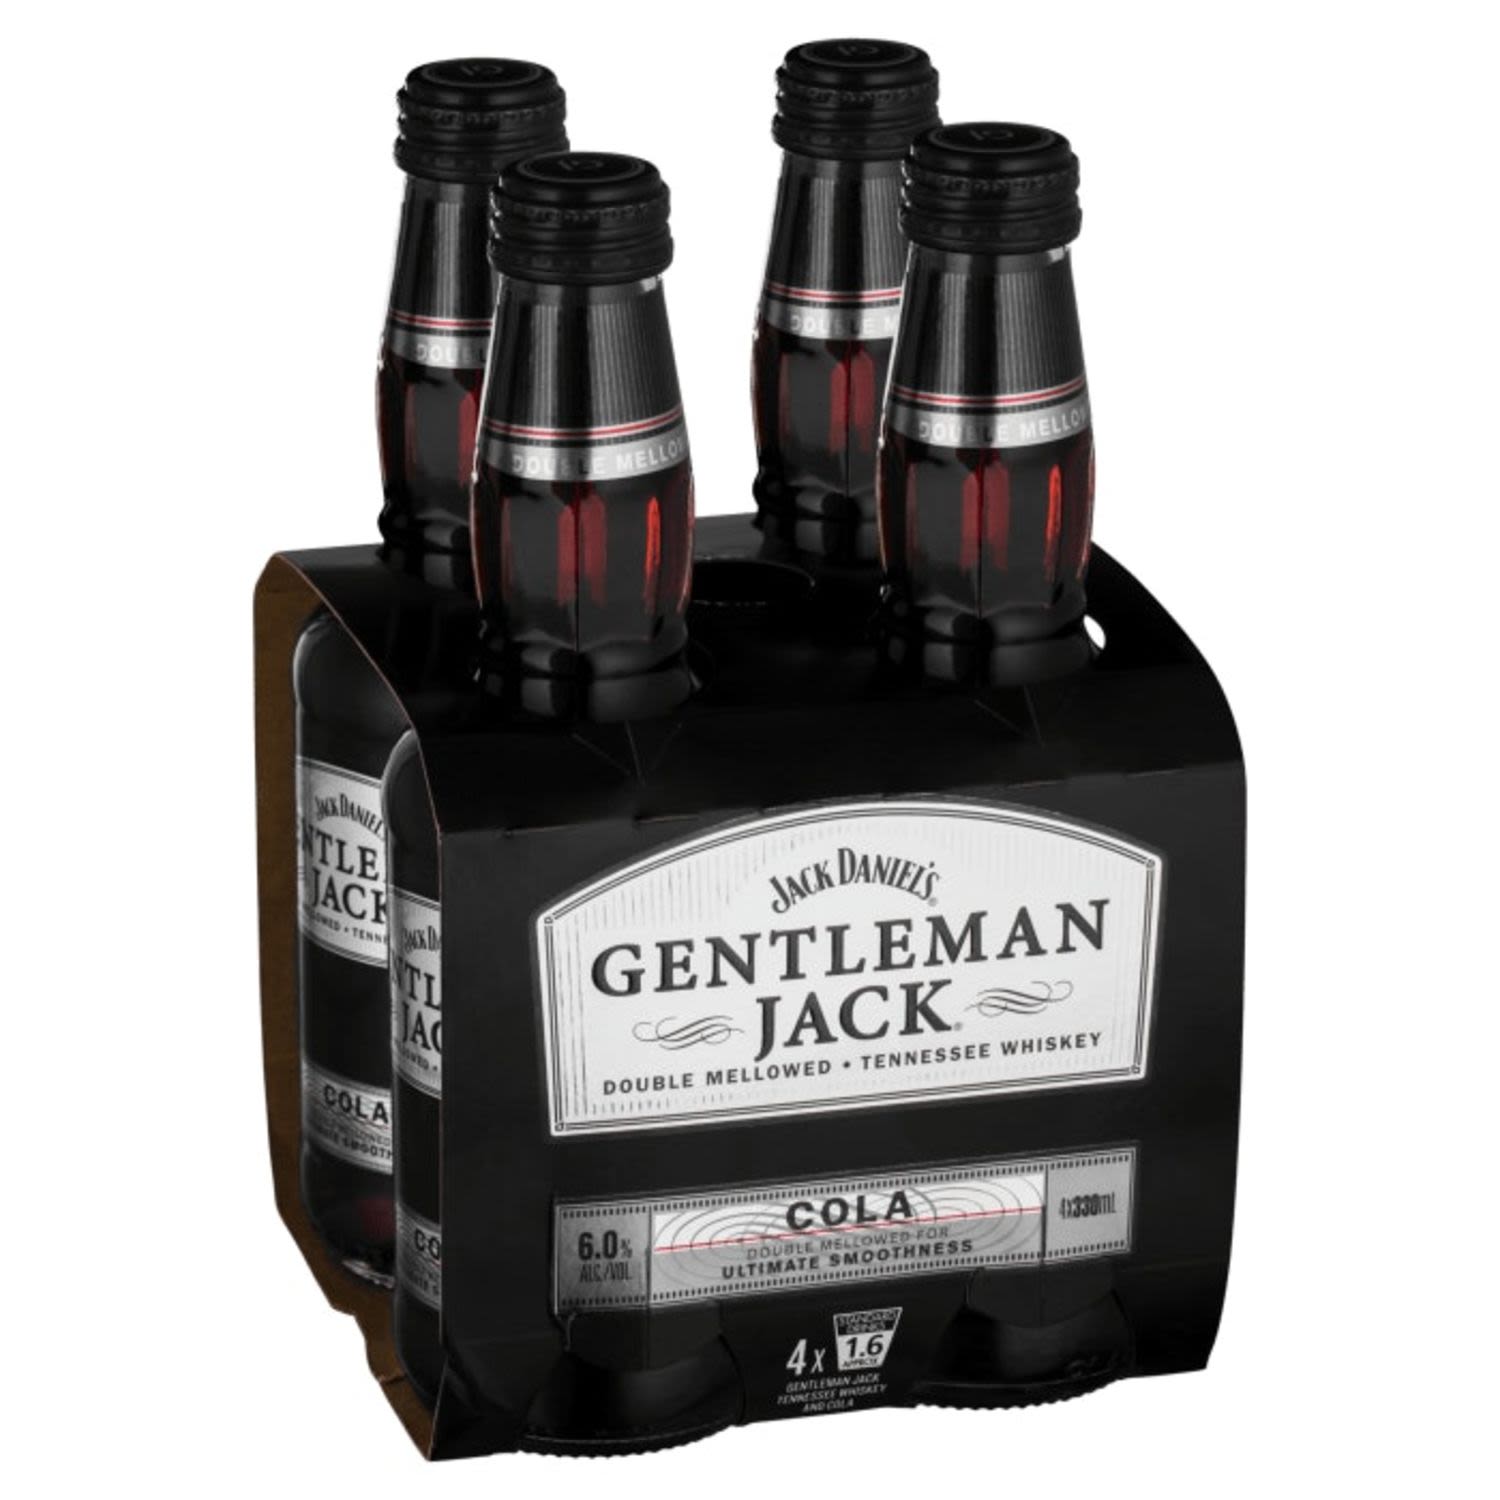 Jack Daniel's Gentleman Jack&Cola 330mL<br /> <br />Alcohol Volume: 6.00%<br /><br />Pack Format: 4 Pack<br /><br />Standard Drinks: 1.6</br /><br />Pack Type: Bottle<br />